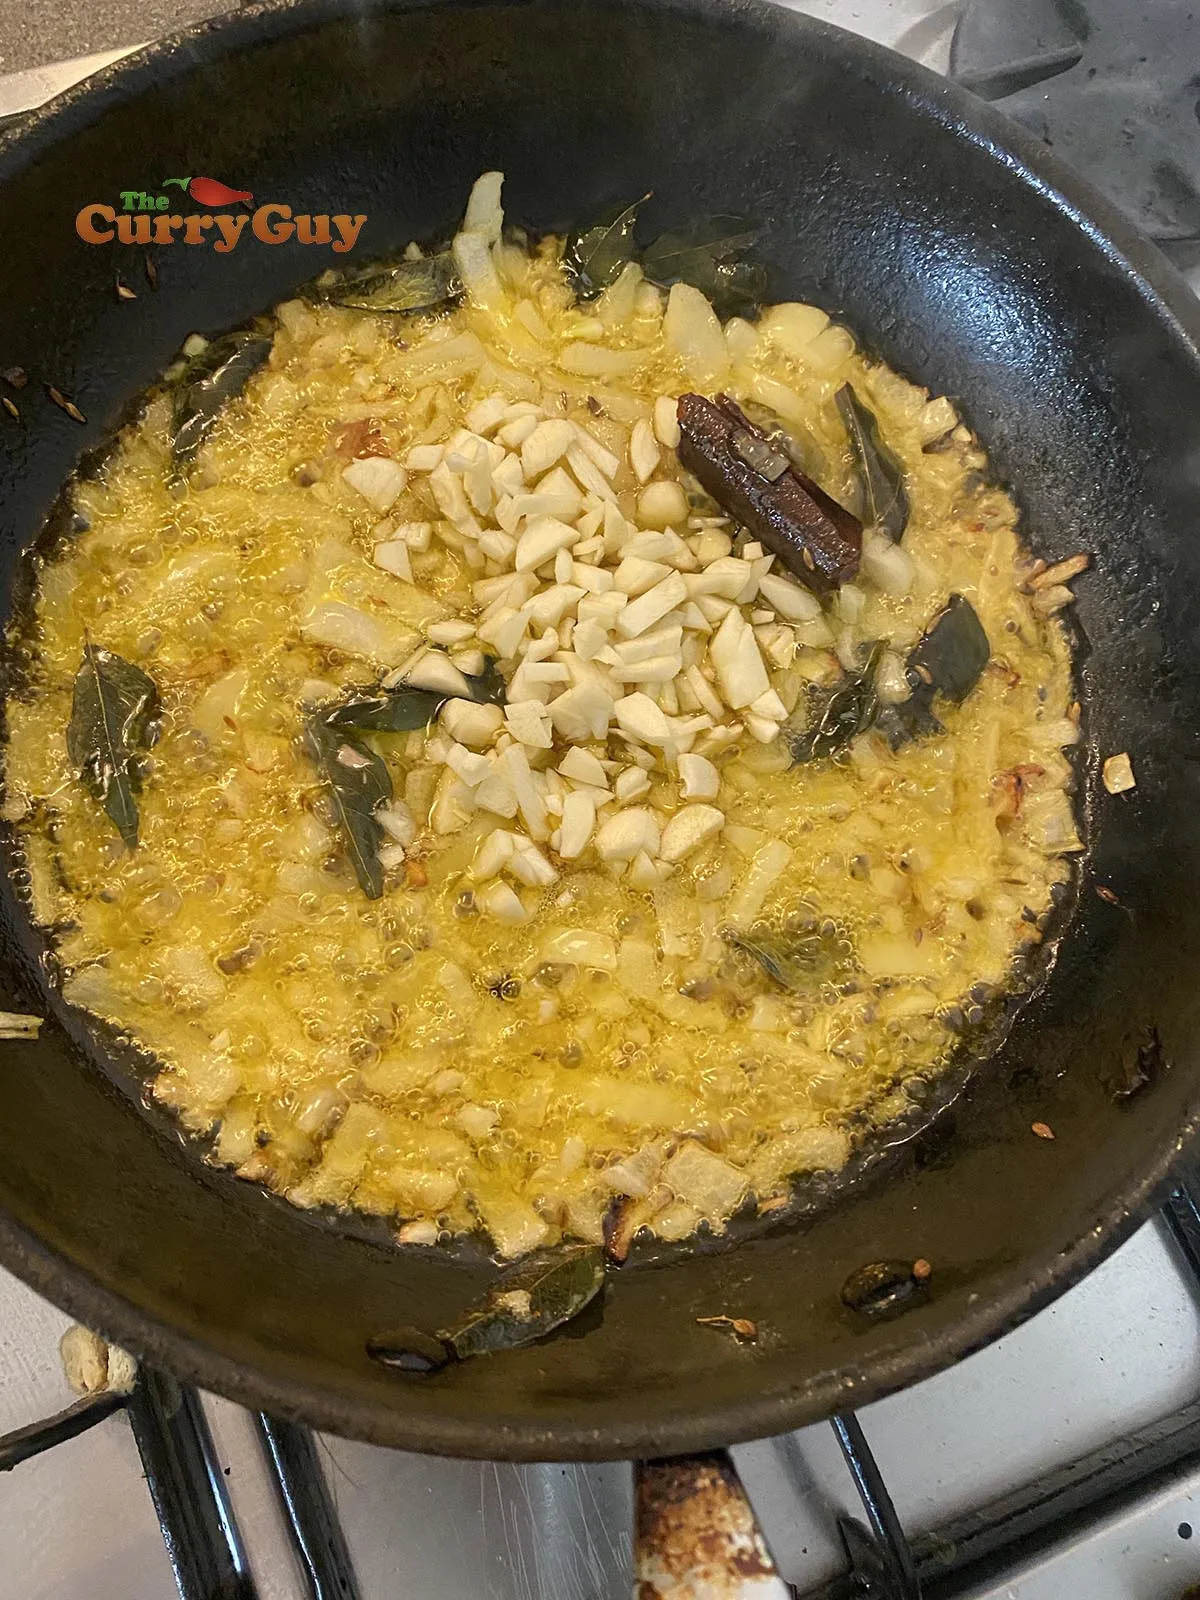 Adding garlic to the pan